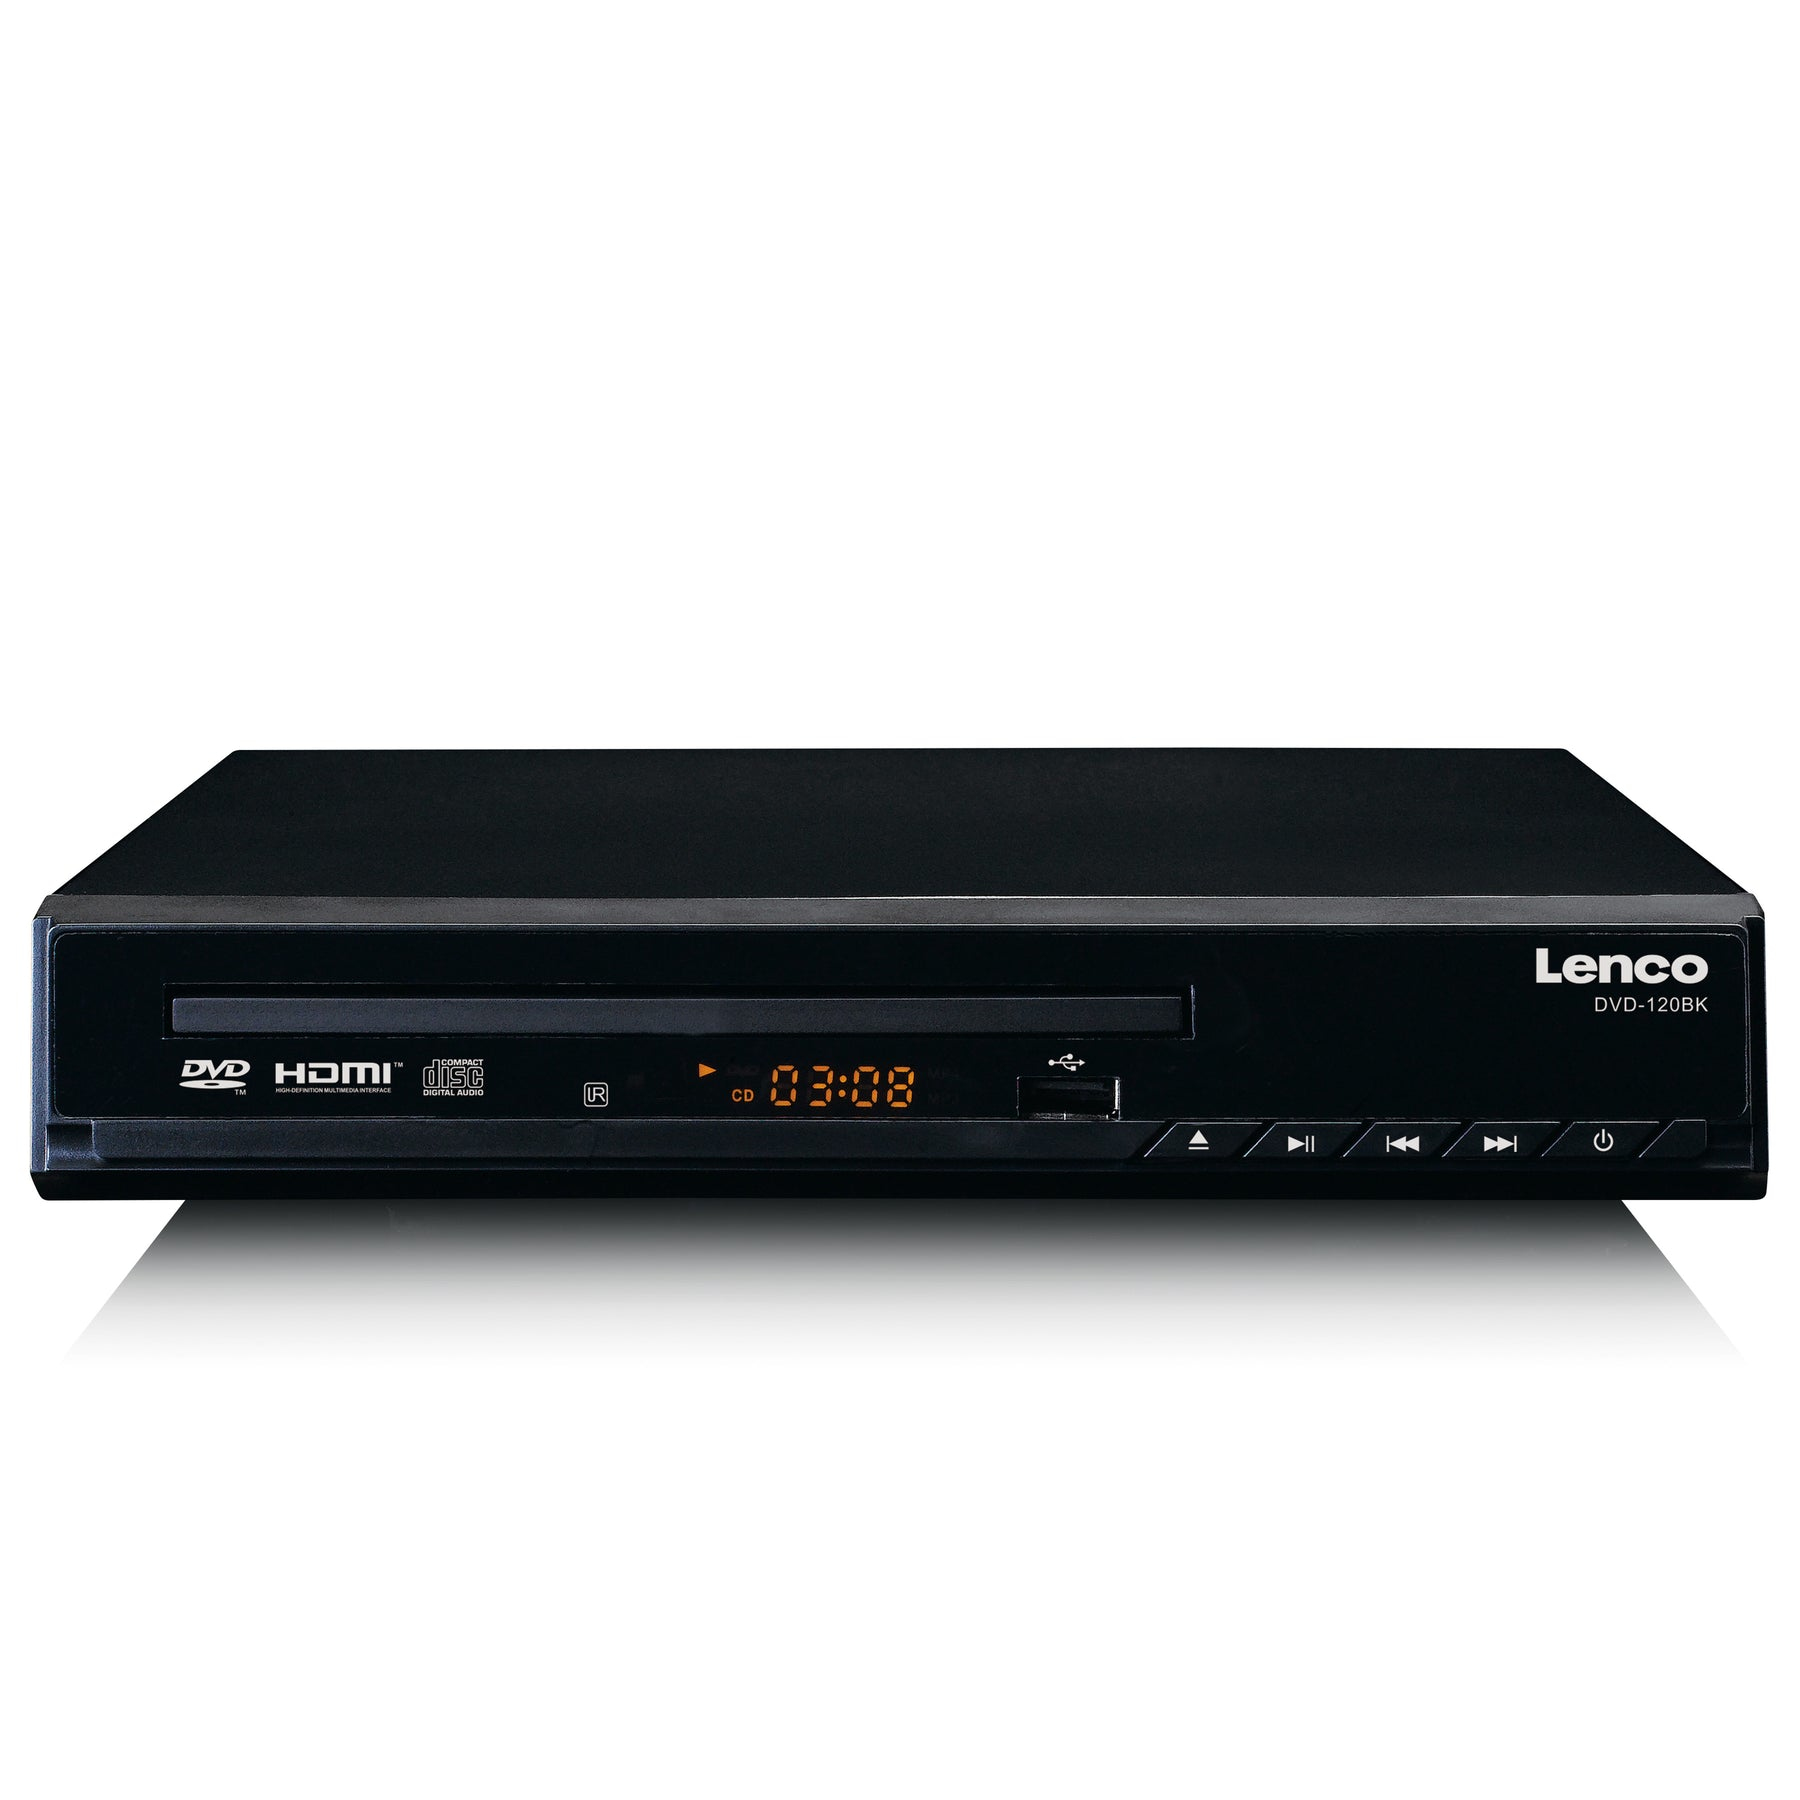 DVD | player DVD-120 Lenco Black Lenco DVD-120BK